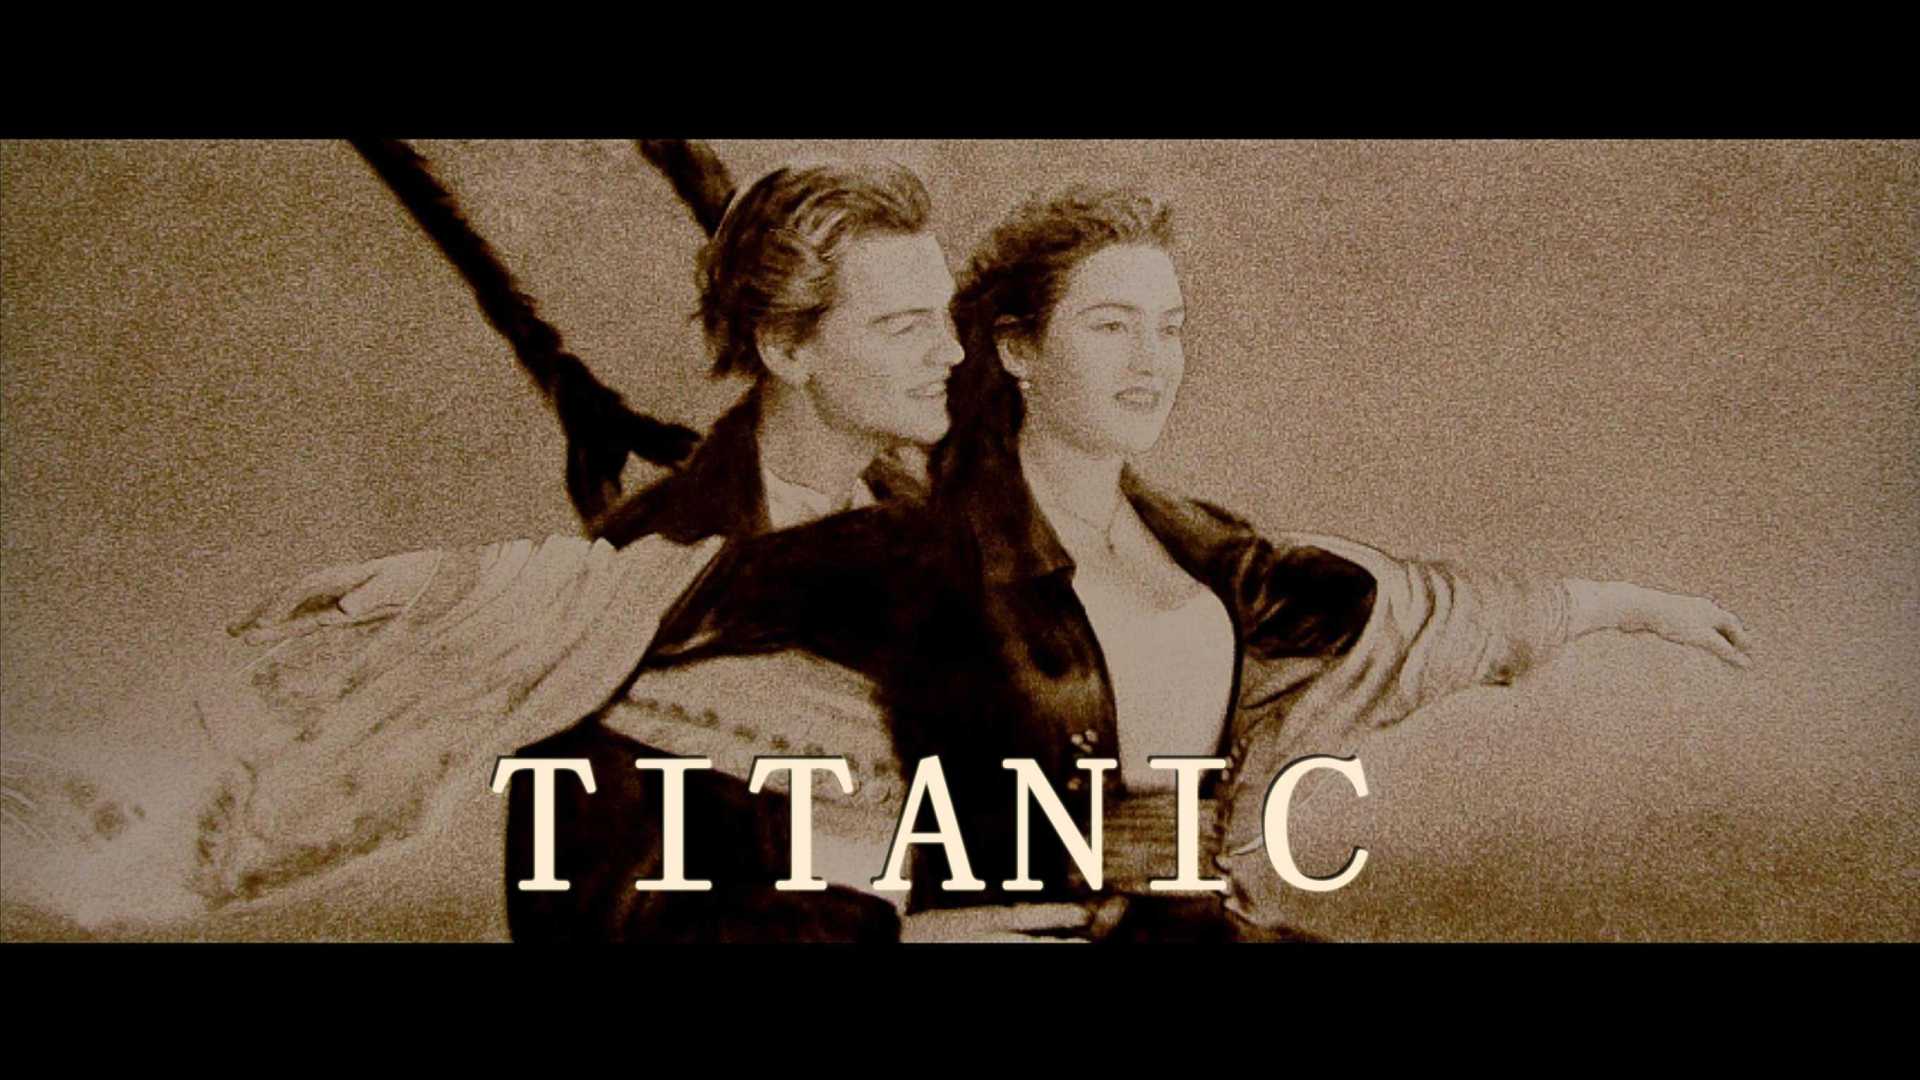 用沙画的方式打开经典电影《泰坦尼克号》